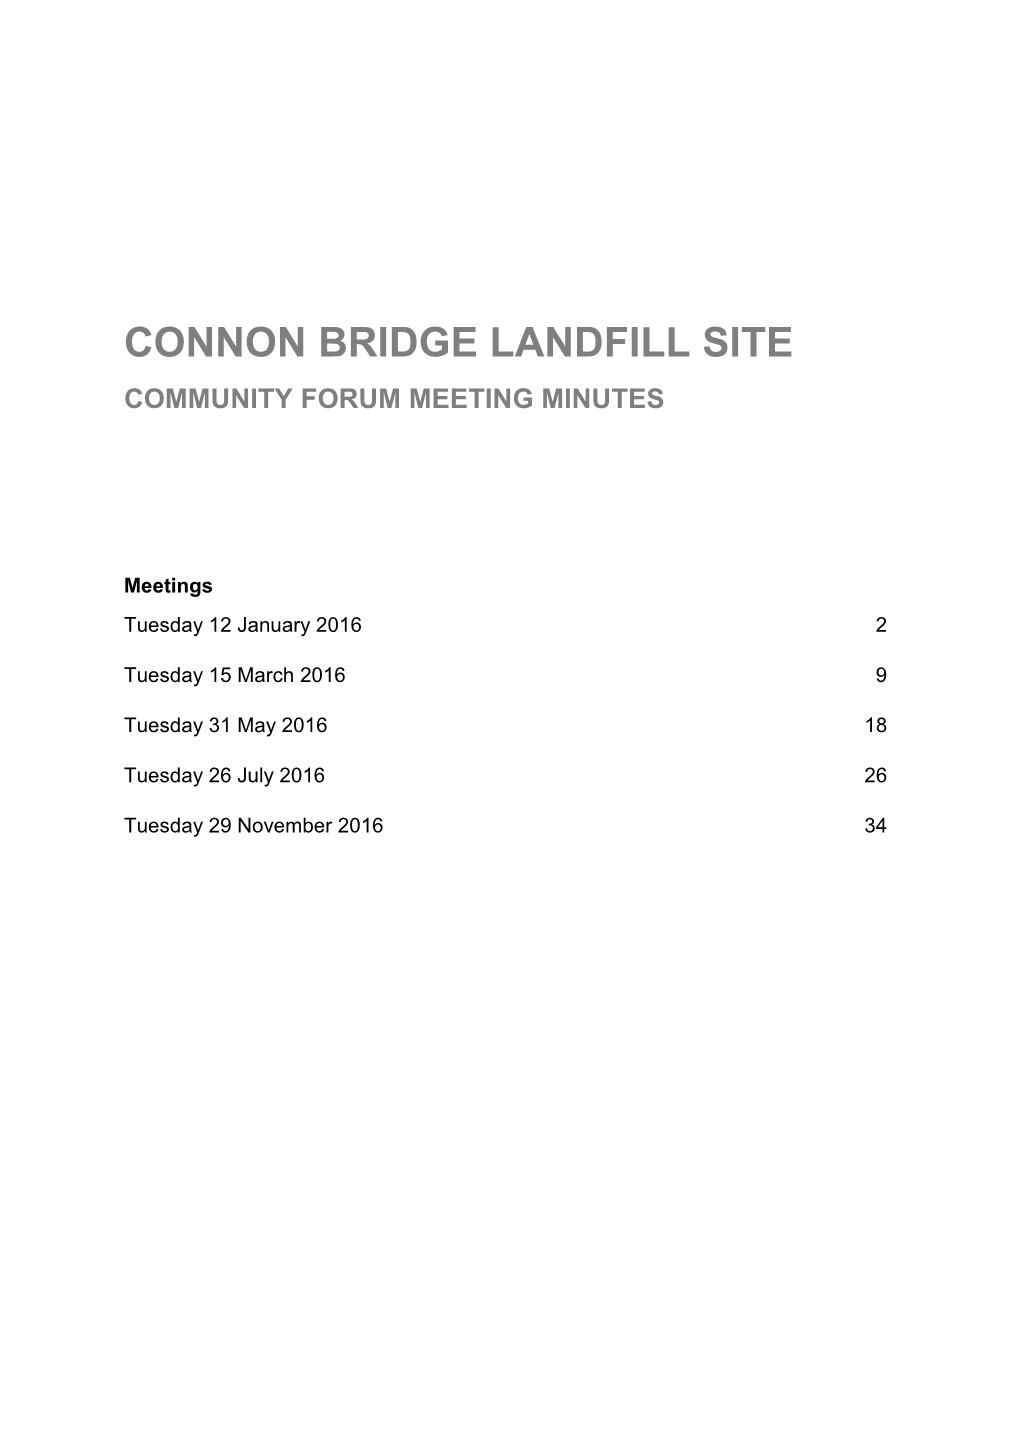 Connon Bridge Landfill Community Liaison Group Meeting Minutes